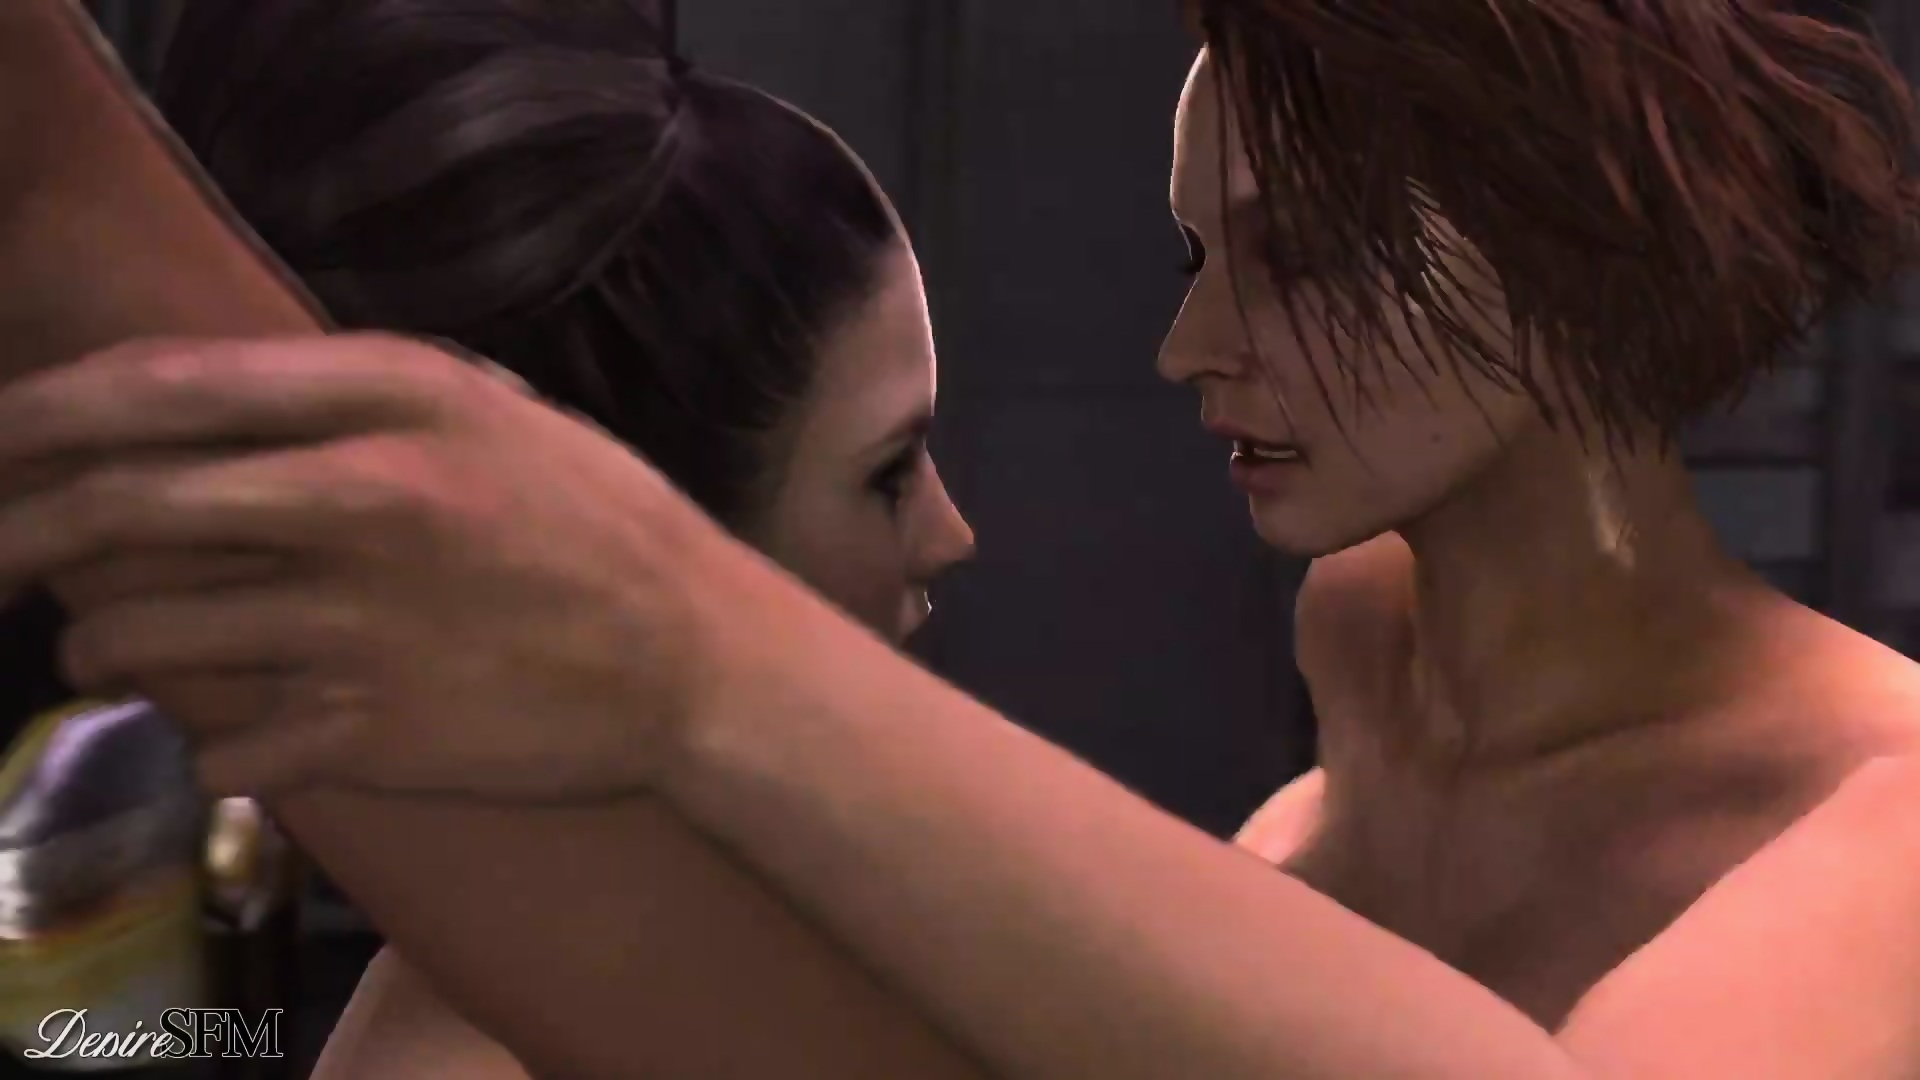 Lesbian Resident Evil - 3d Resident Evil Lesbian Story Mode By (pookie) - EPORNER